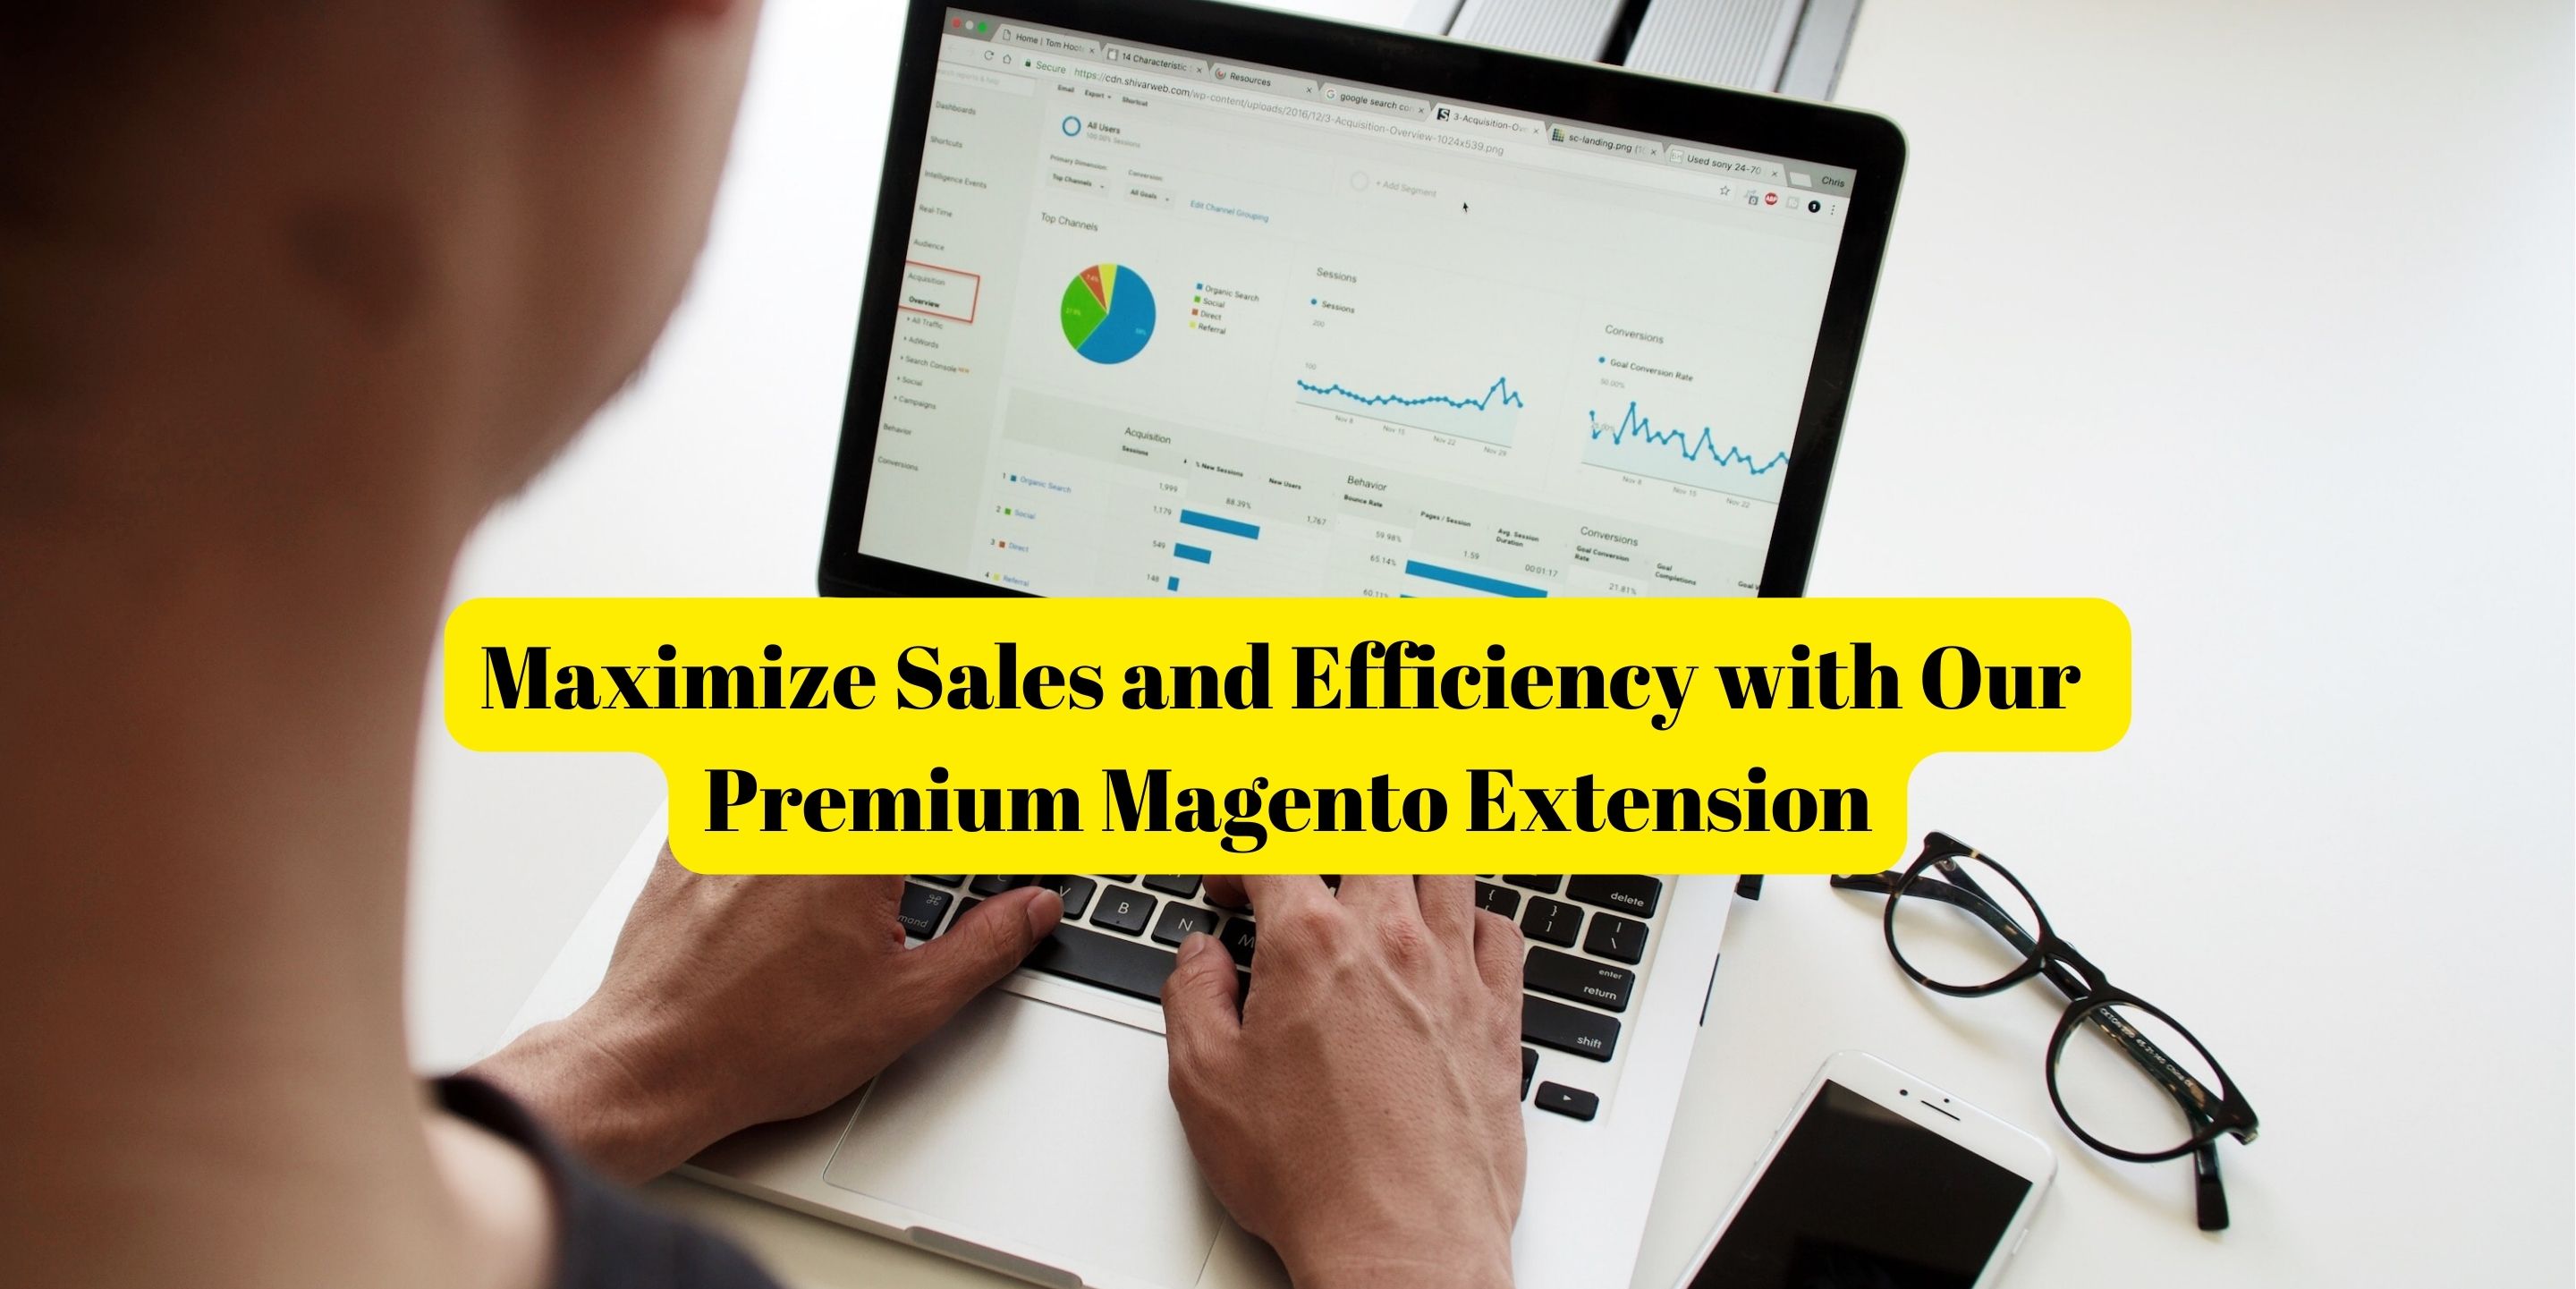 Premium Magento Extension